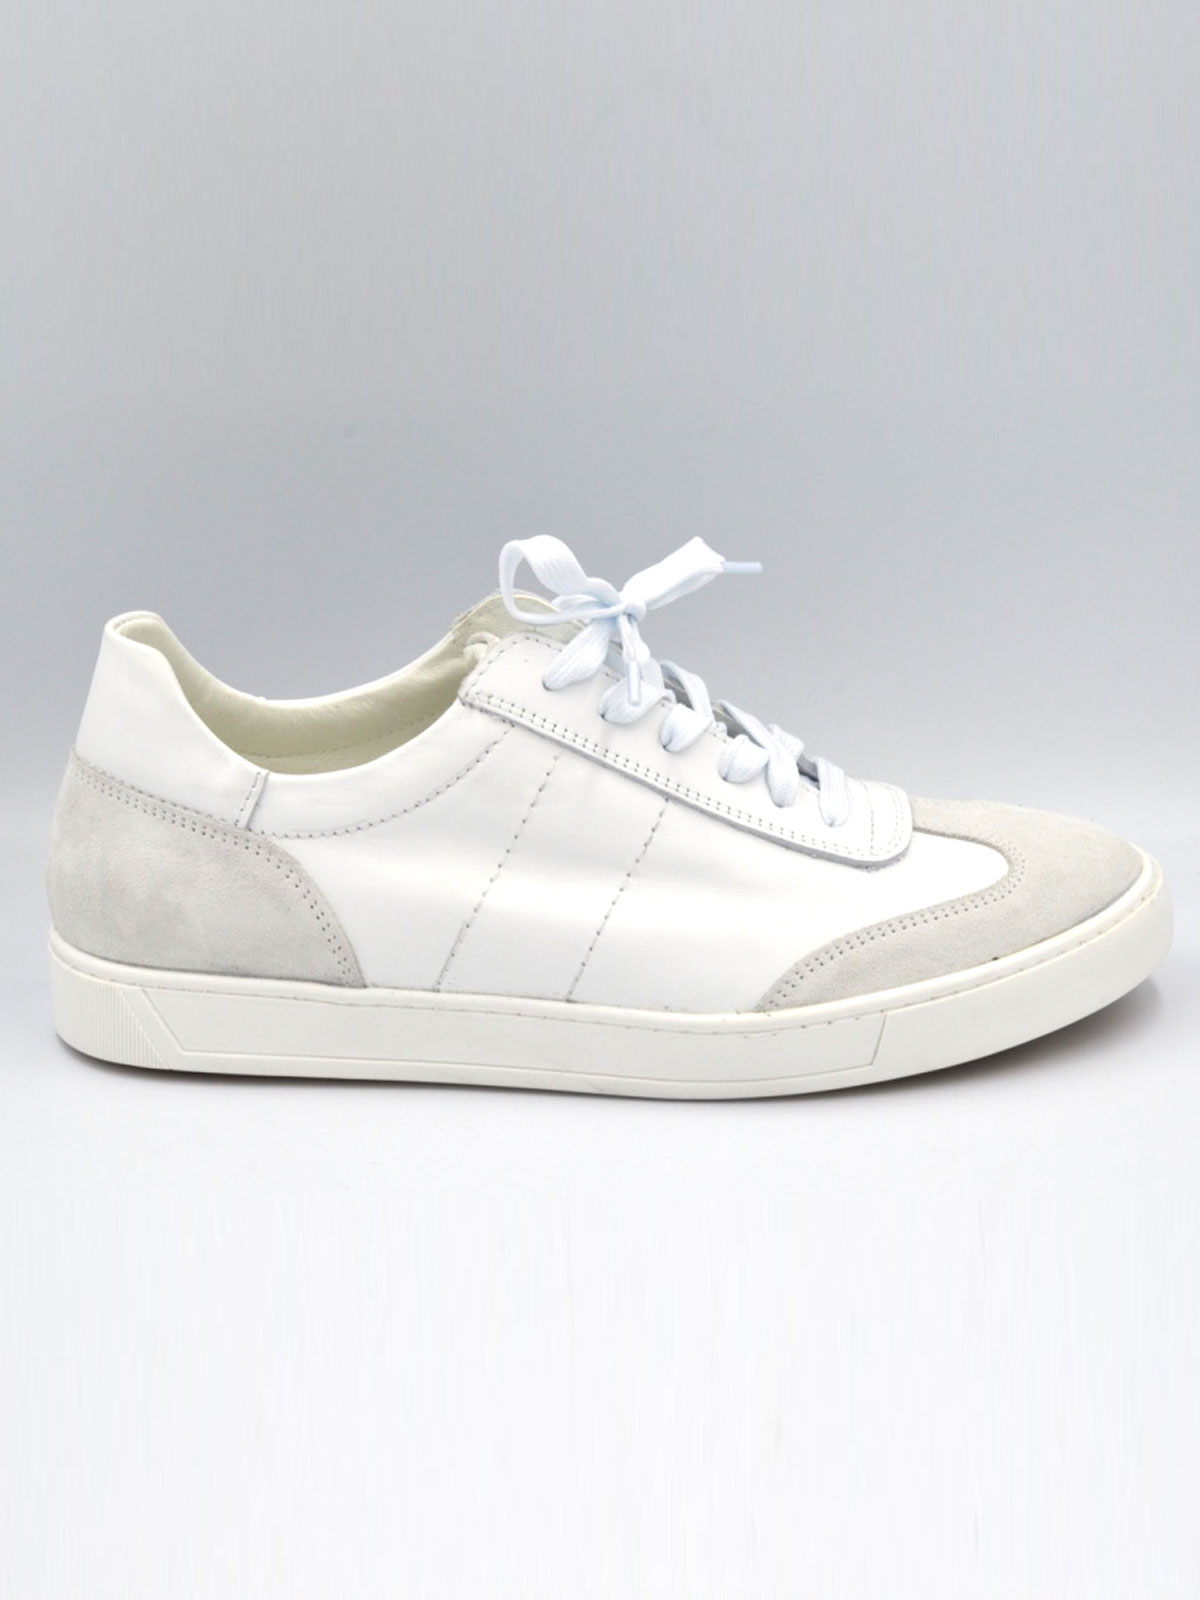 Λευκά δερμάτινα αθλητικά παπούτσια - 81103 - € 78.18 img2